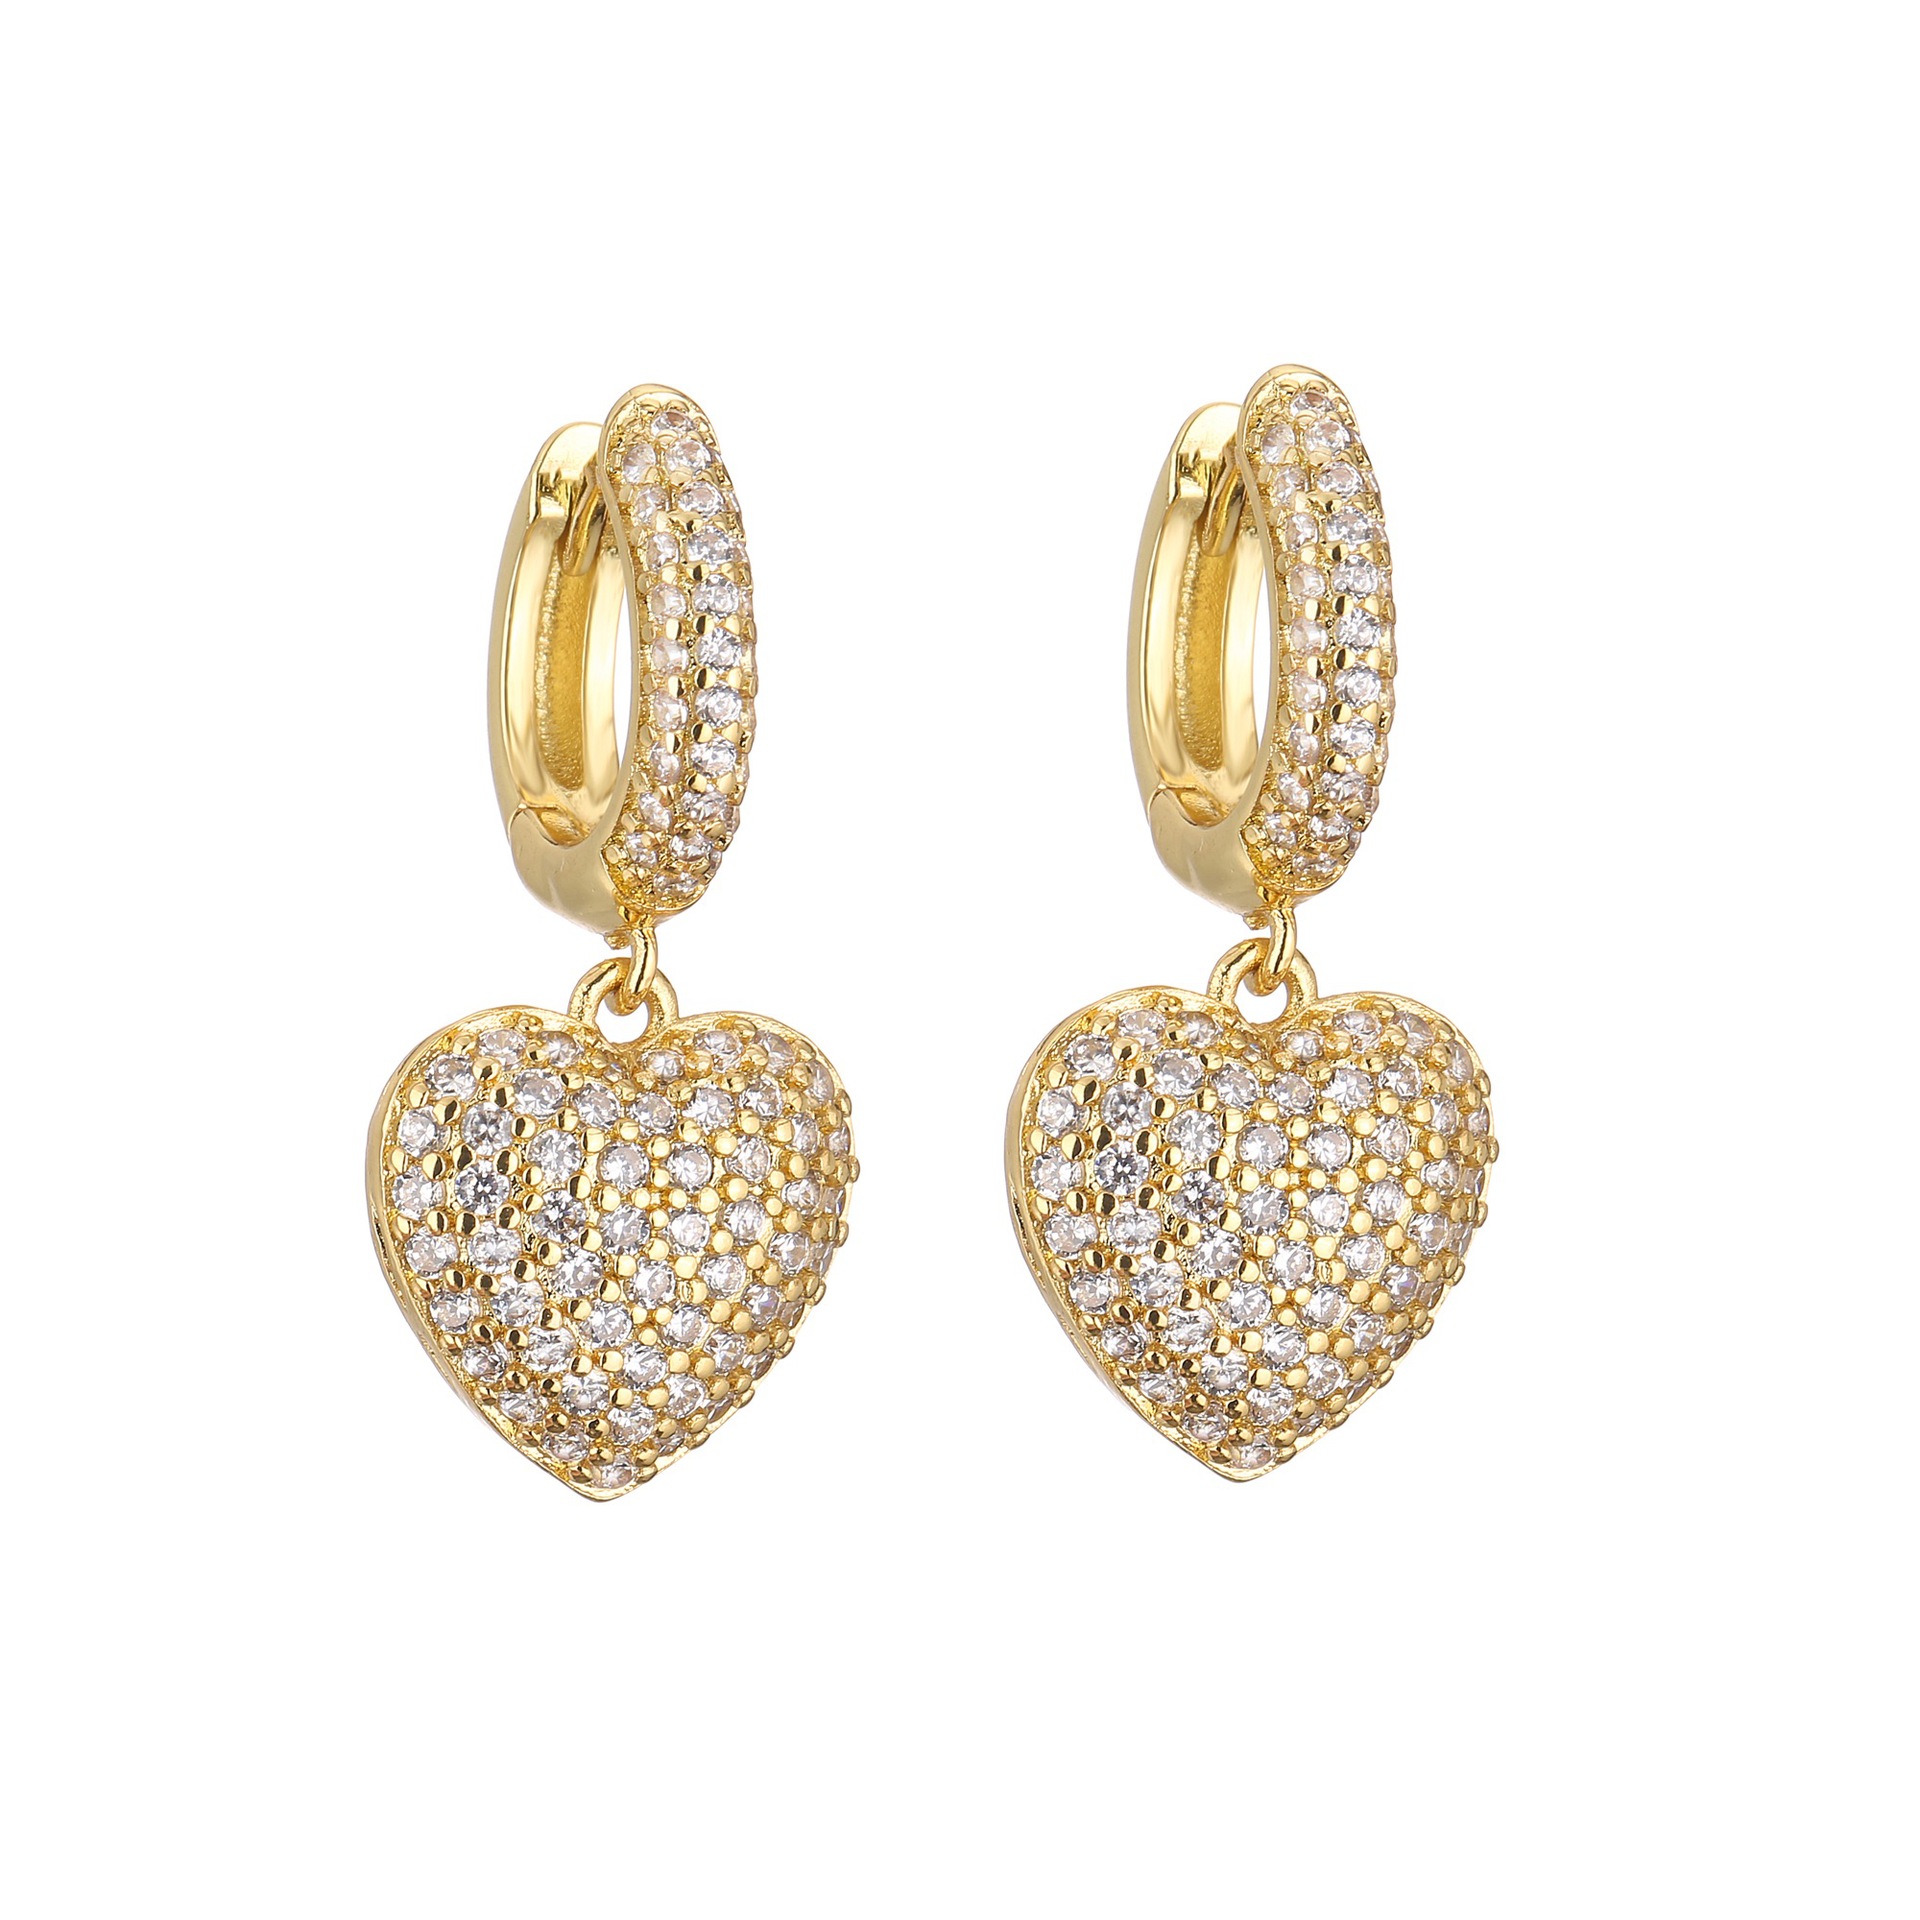 1 pair of gold earrings